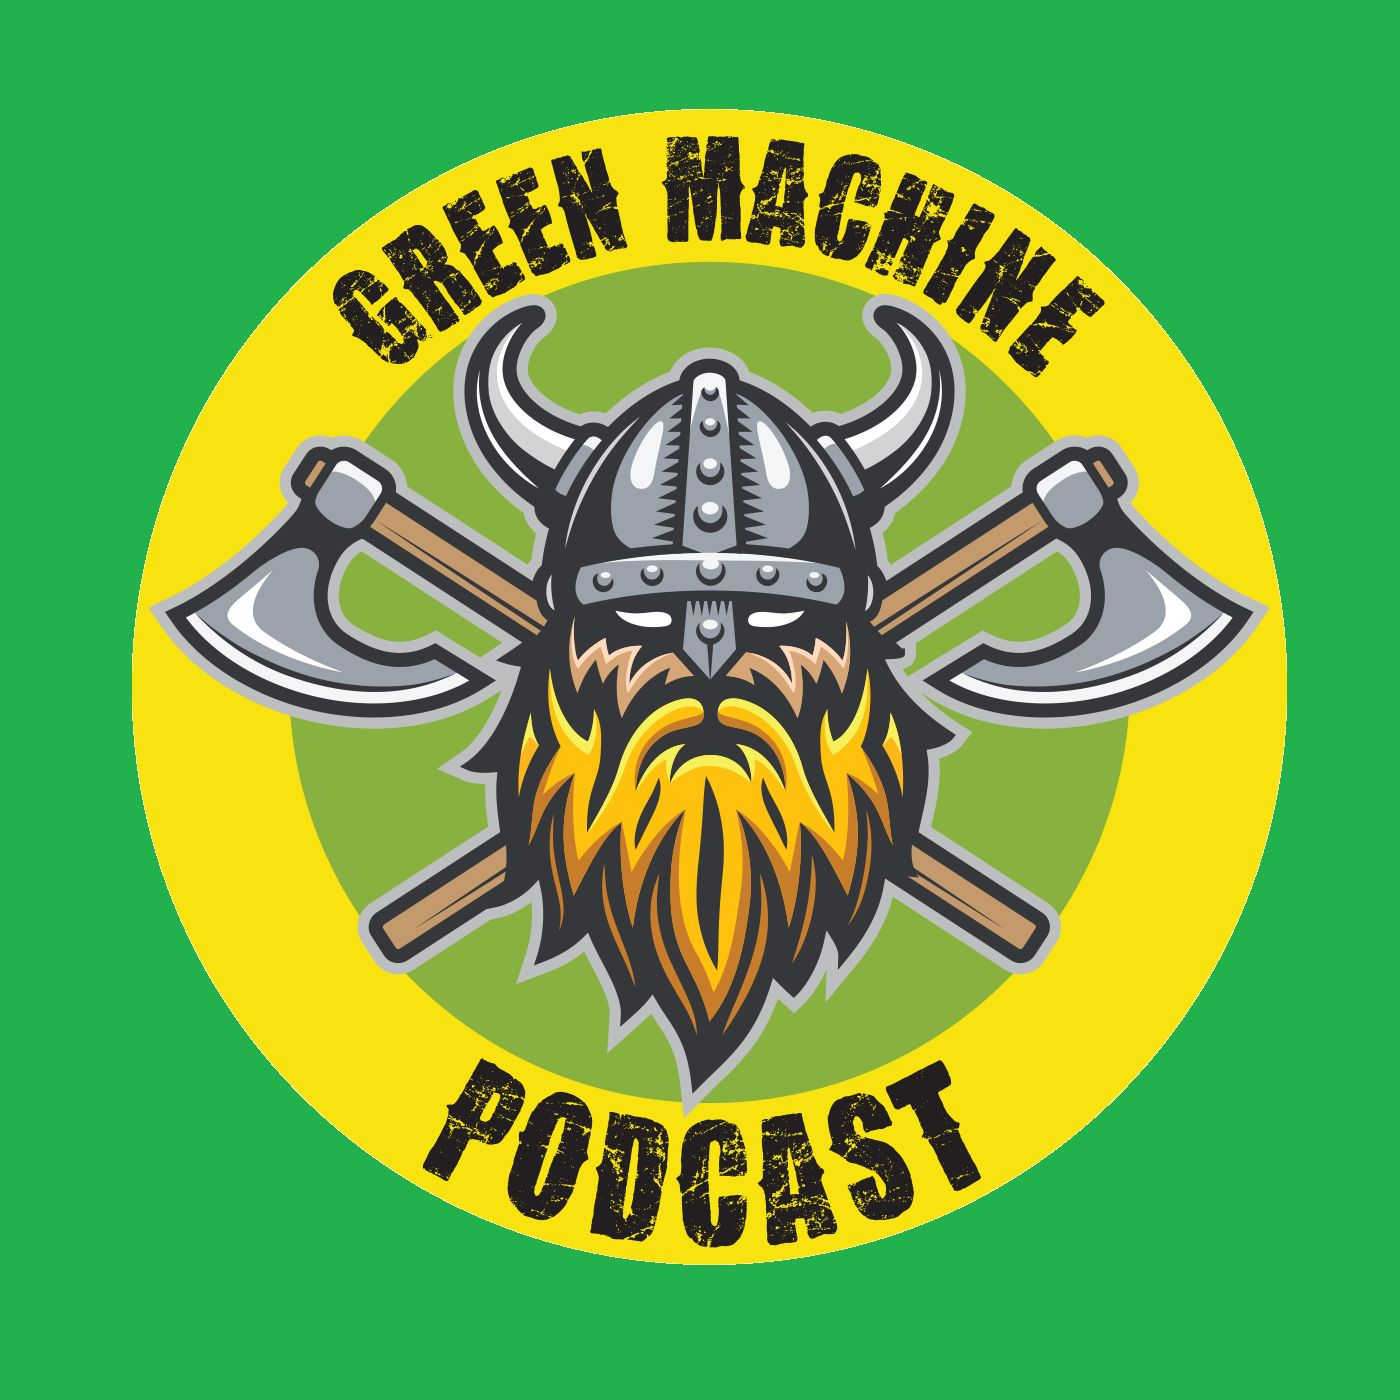 Green Machine Podcast - Episode 182 - I Got Schills